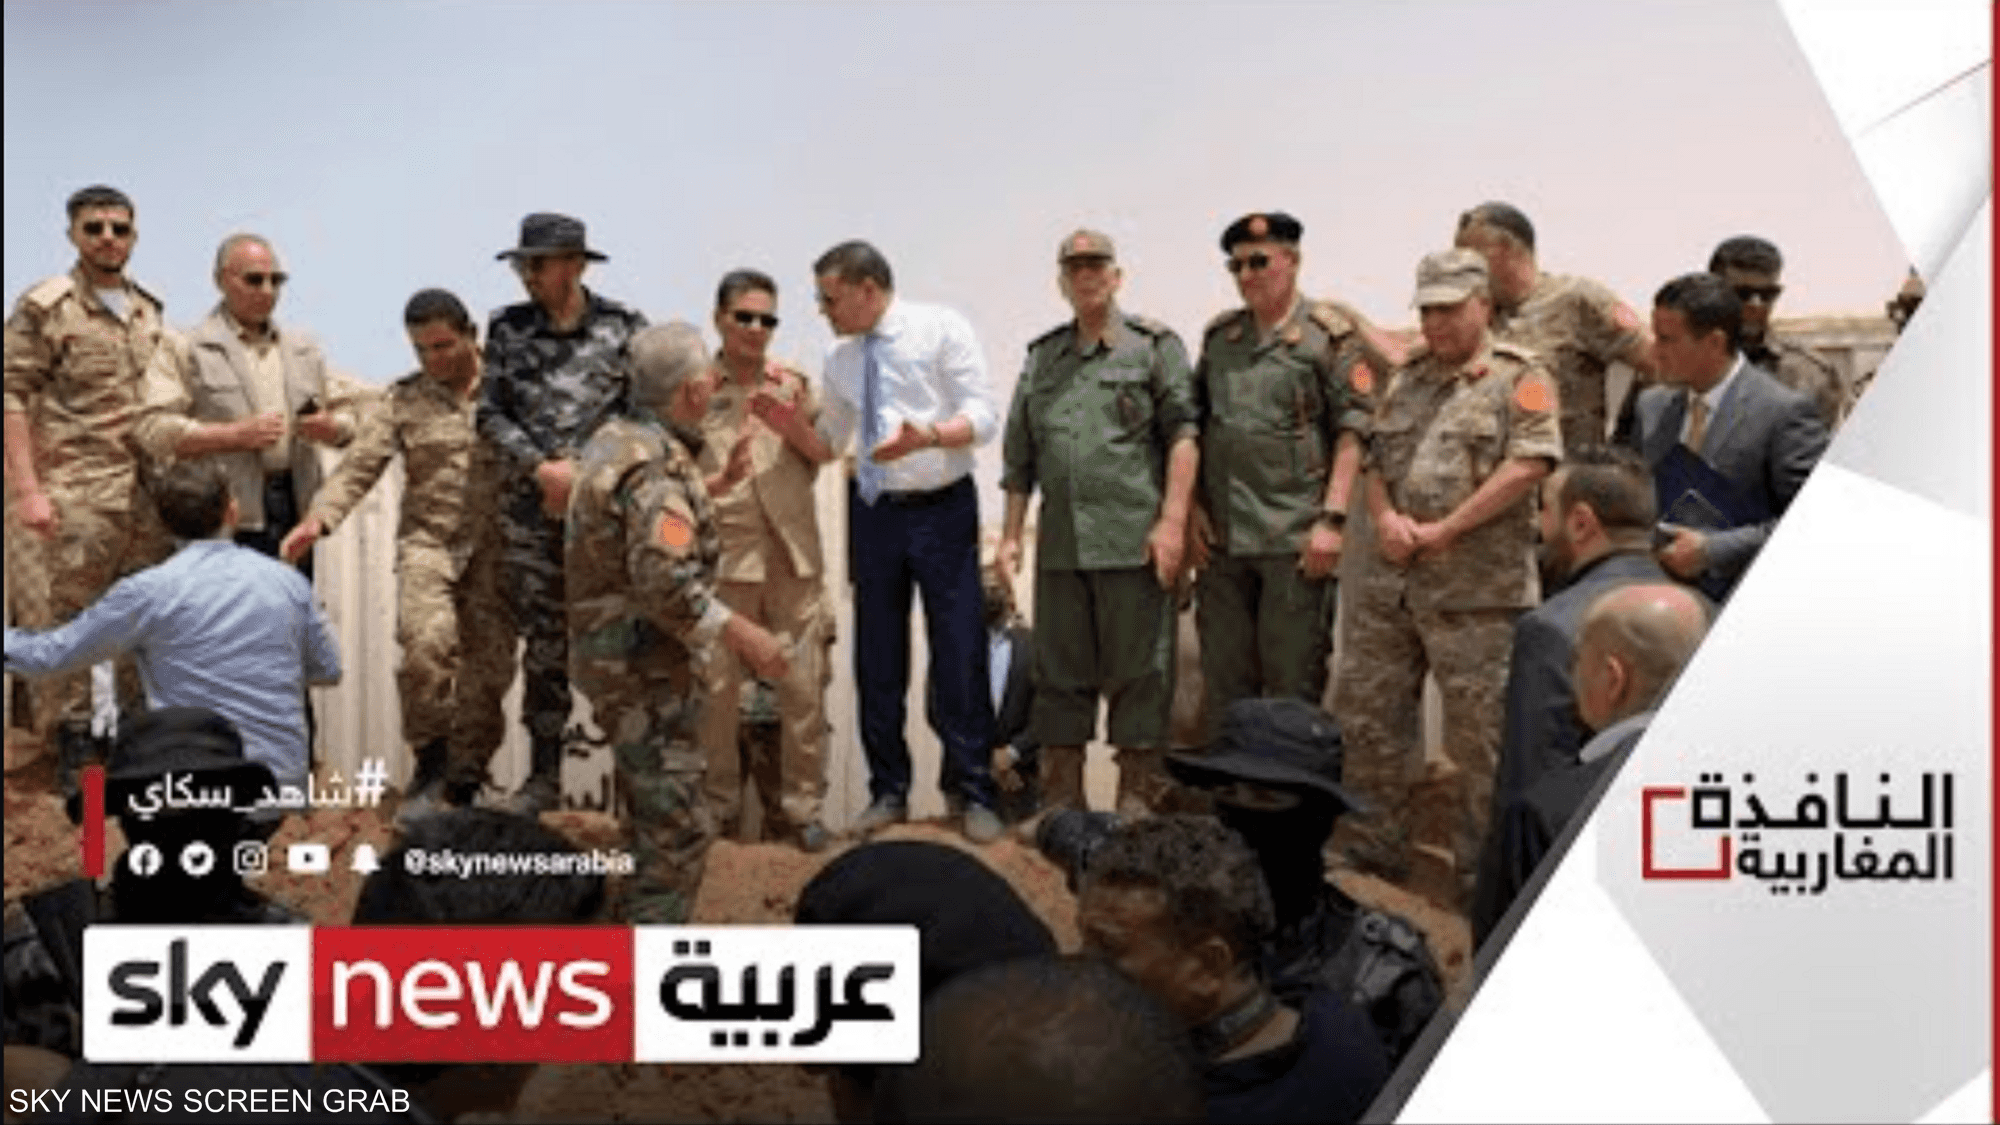 لقاء بين مسؤولين عسكريين من شرق ليبيا وغربها